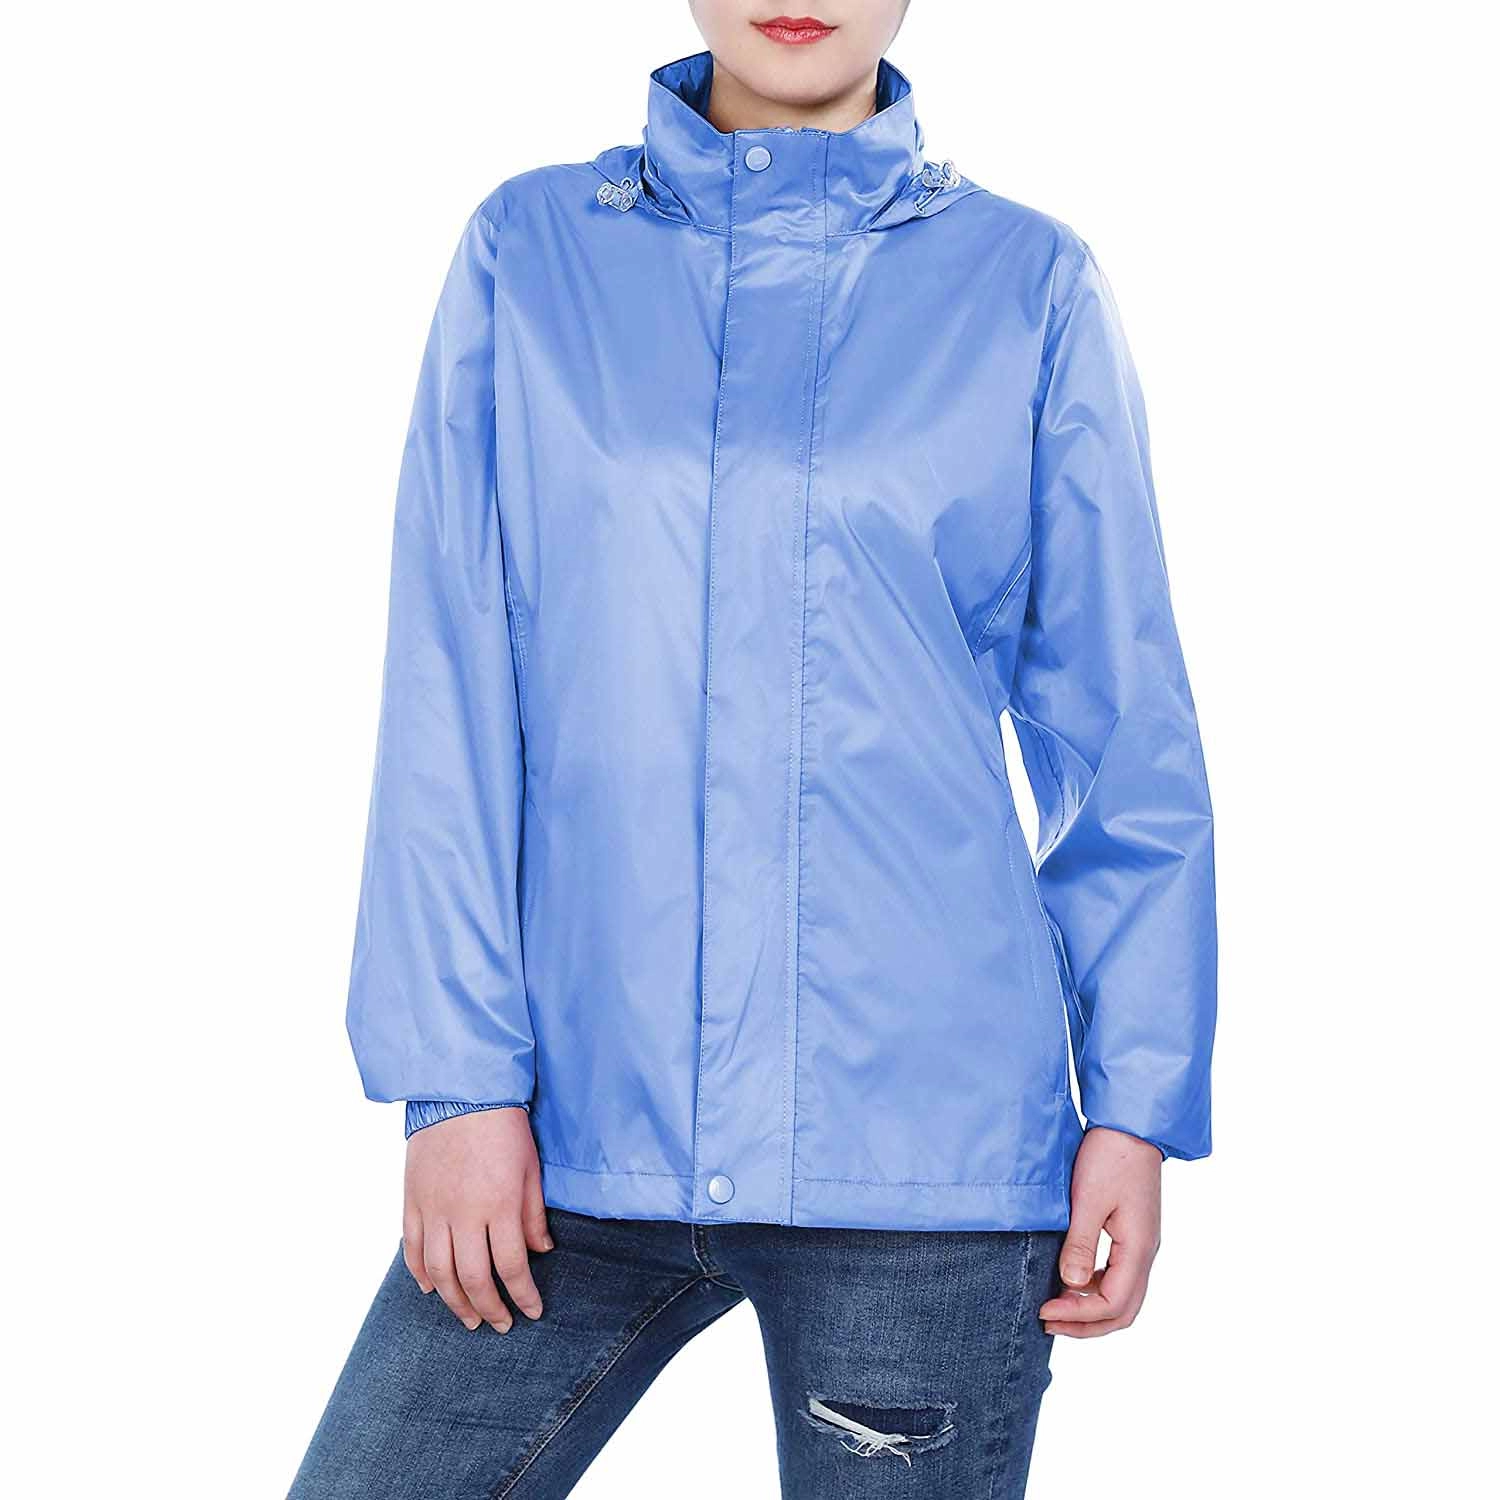 Γυναικείο ελαφρύ αδιάβροχο συσκευασμένο Αδιάβροχο μπουφάν αδιάβροχο με κουκούλα Active Outdoor Windbreaker